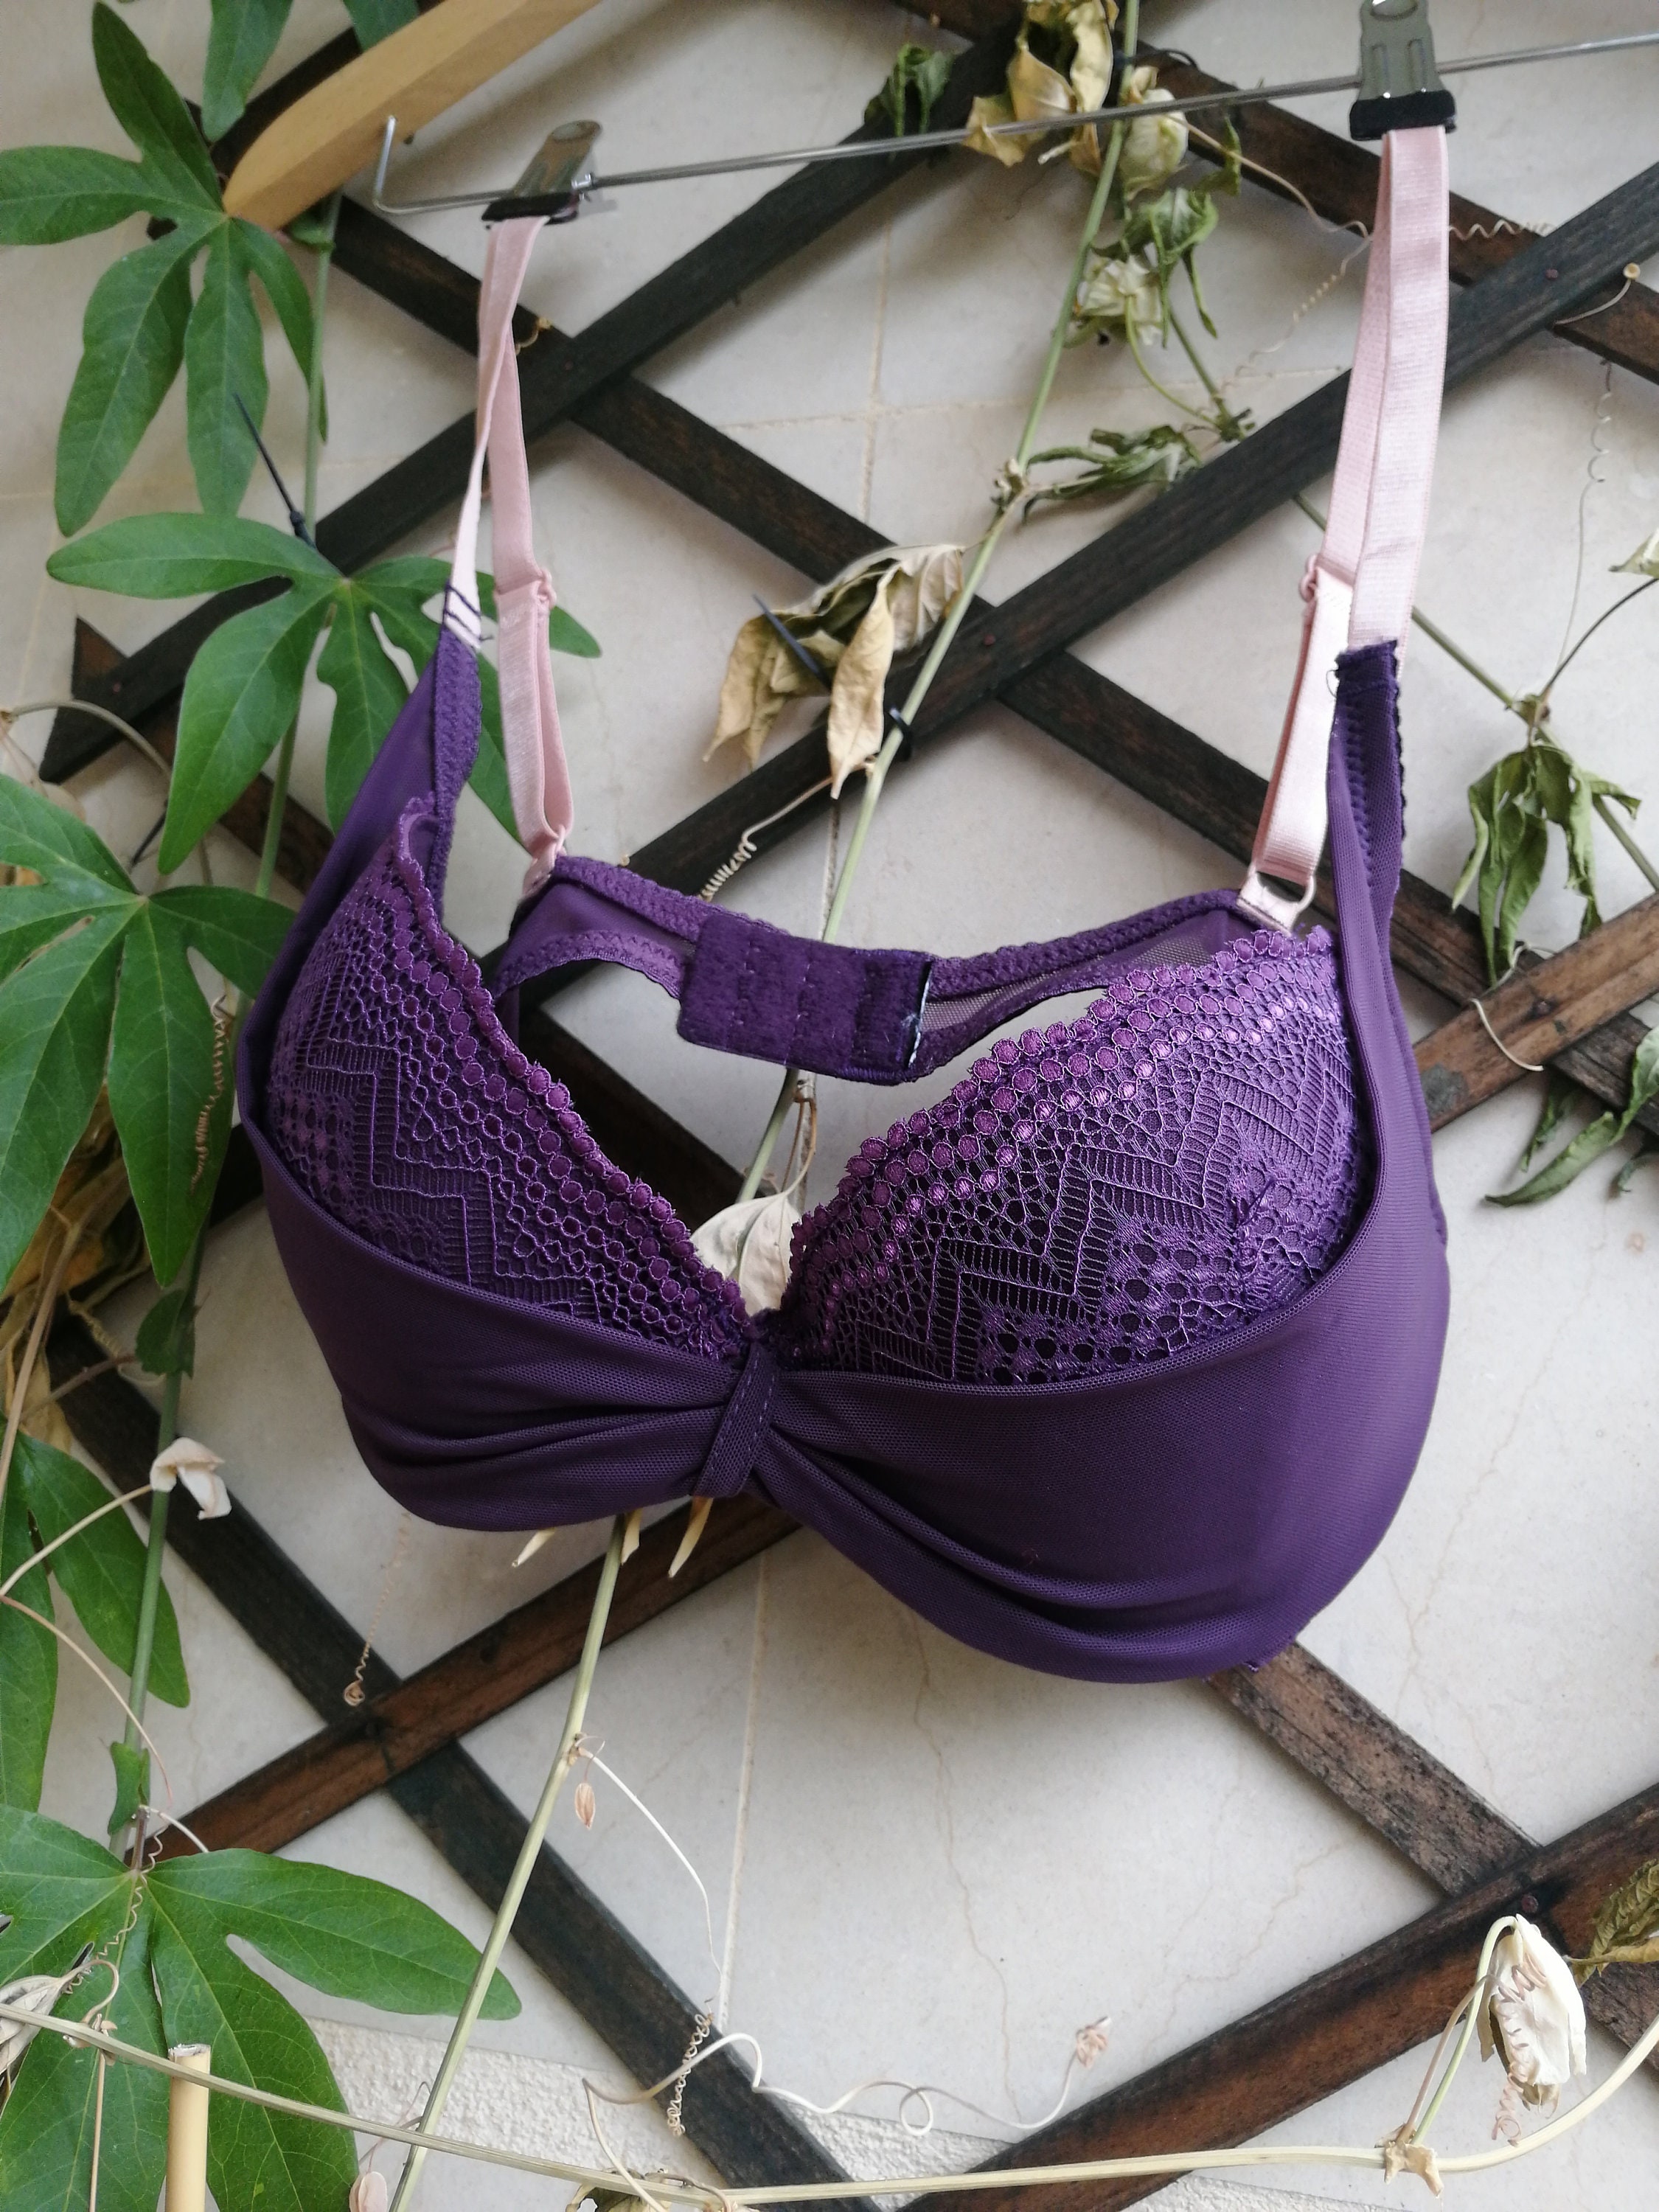 Purple 36F Bras & Bra Sets for Women for sale